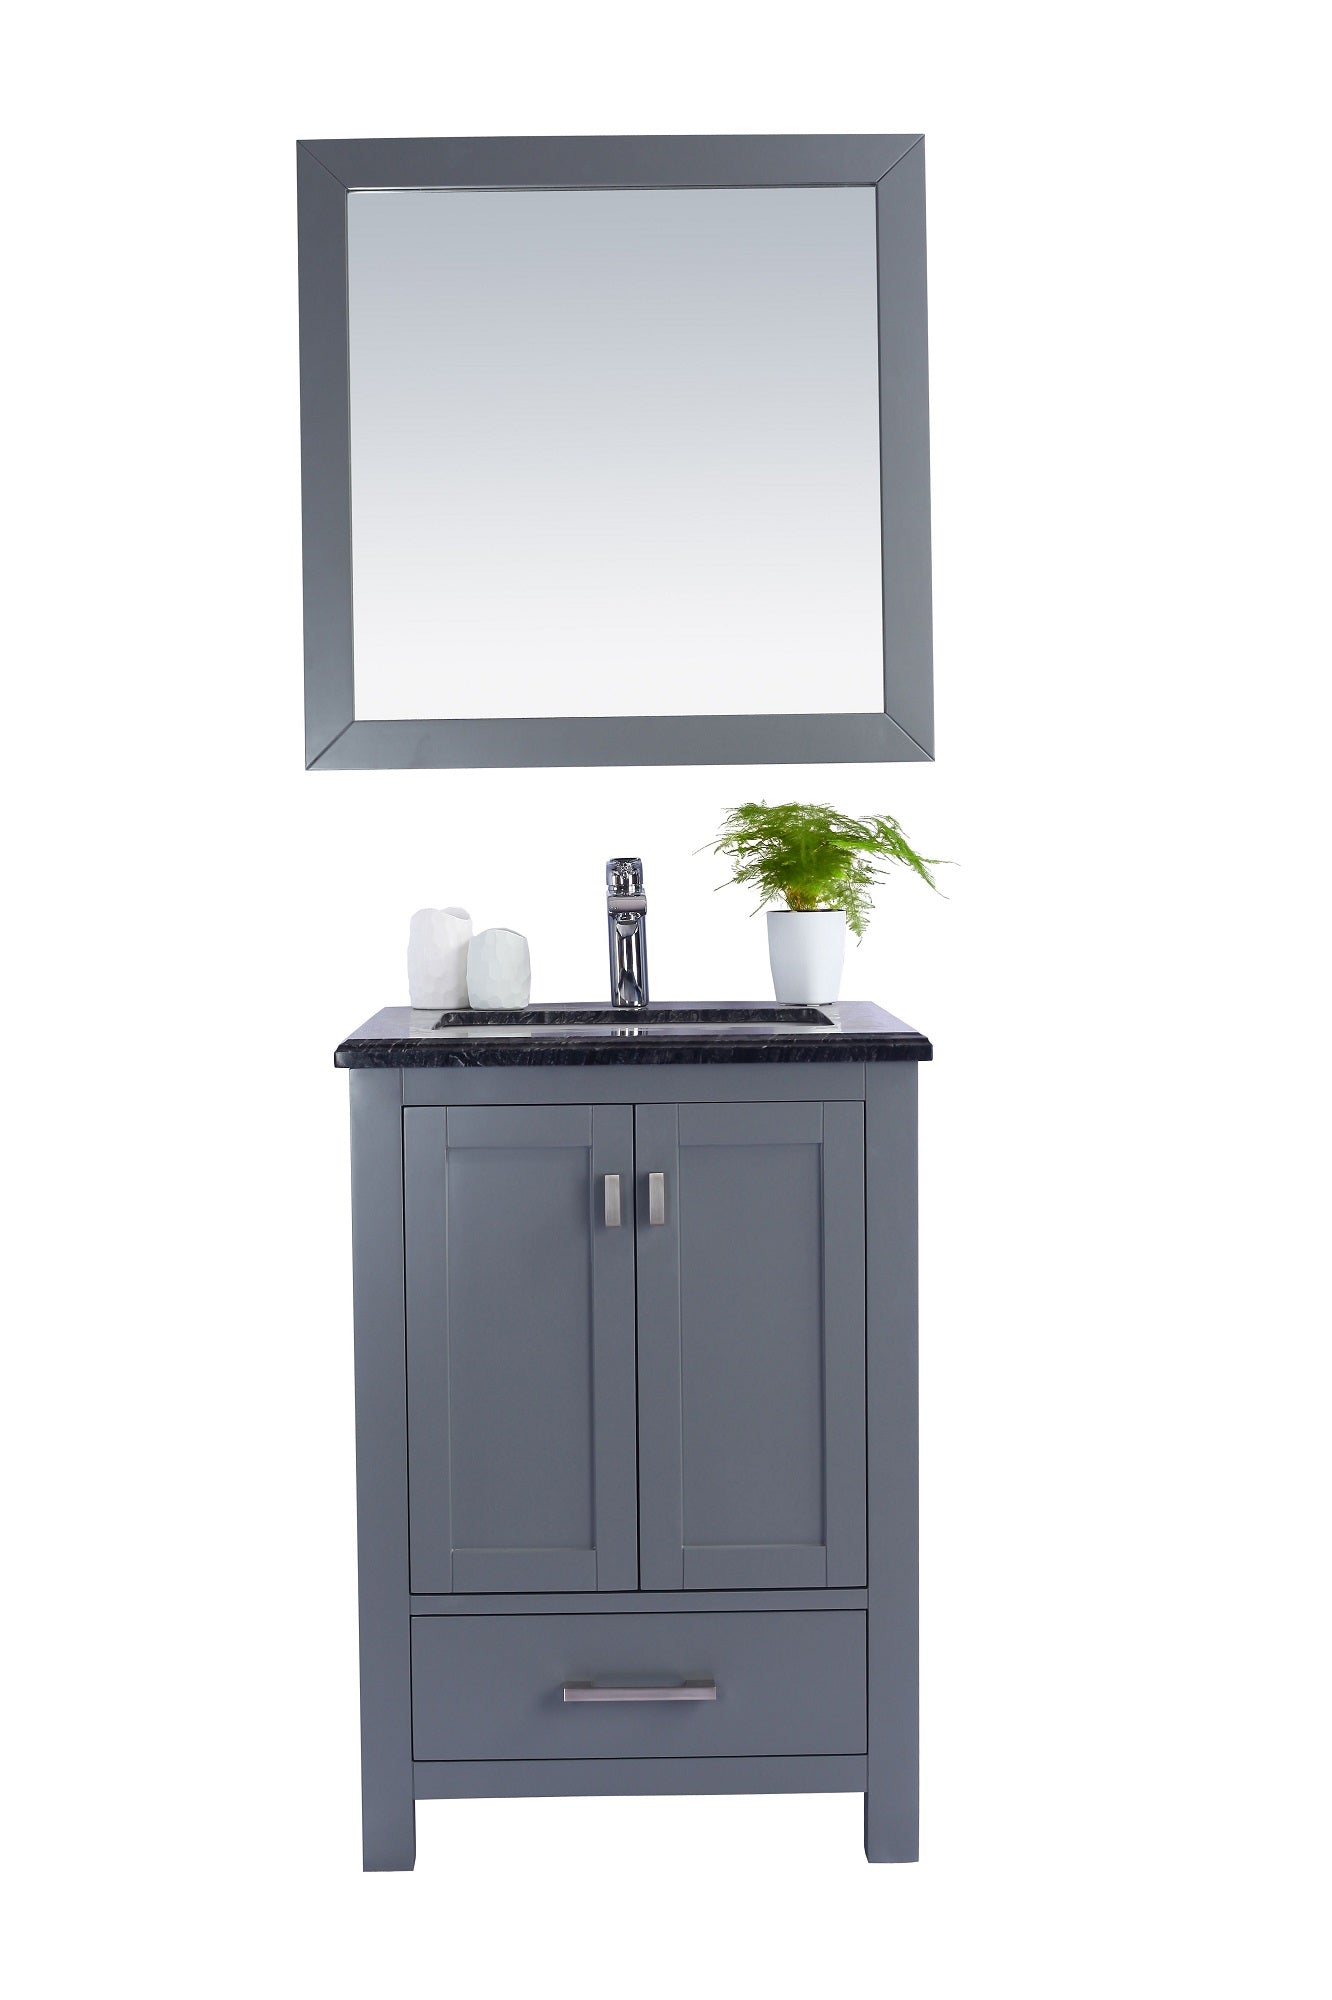 Wilson 24 - Cabinet with Countertop - Luxe Bathroom Vanities Luxury Bathroom Fixtures Bathroom Furniture